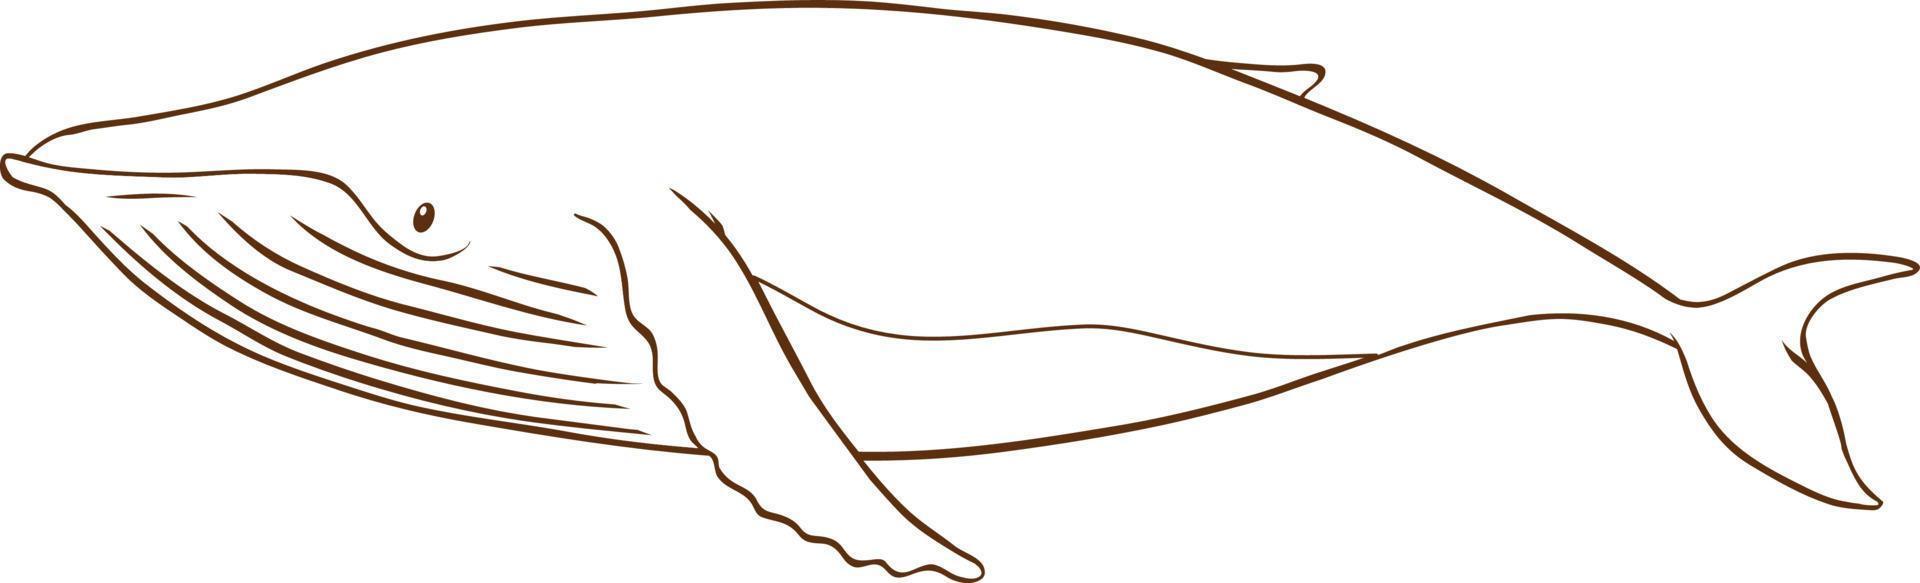 Wal im einfachen Doodle-Stil auf weißem Hintergrund vektor